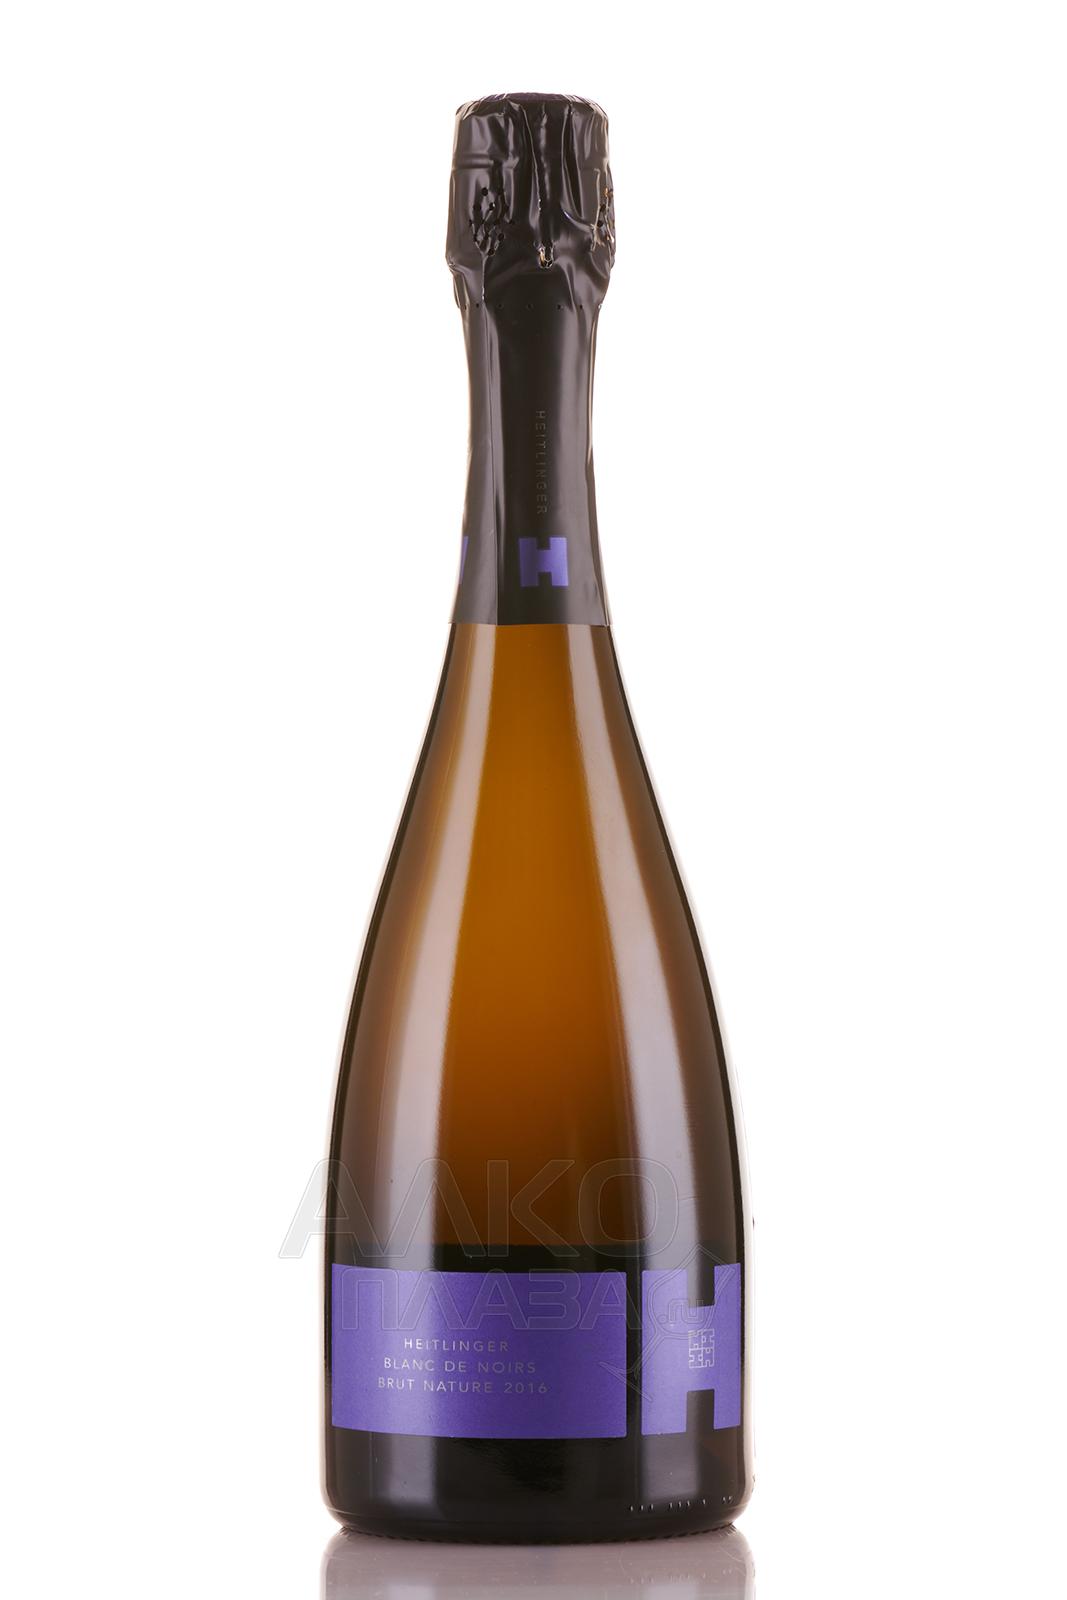 Weingut Heitlinger Blanc de Noir Brut Nature - вино игристое Вайнгут Хайтлингер Блан де Нуар Брют Натюр 0.75 л